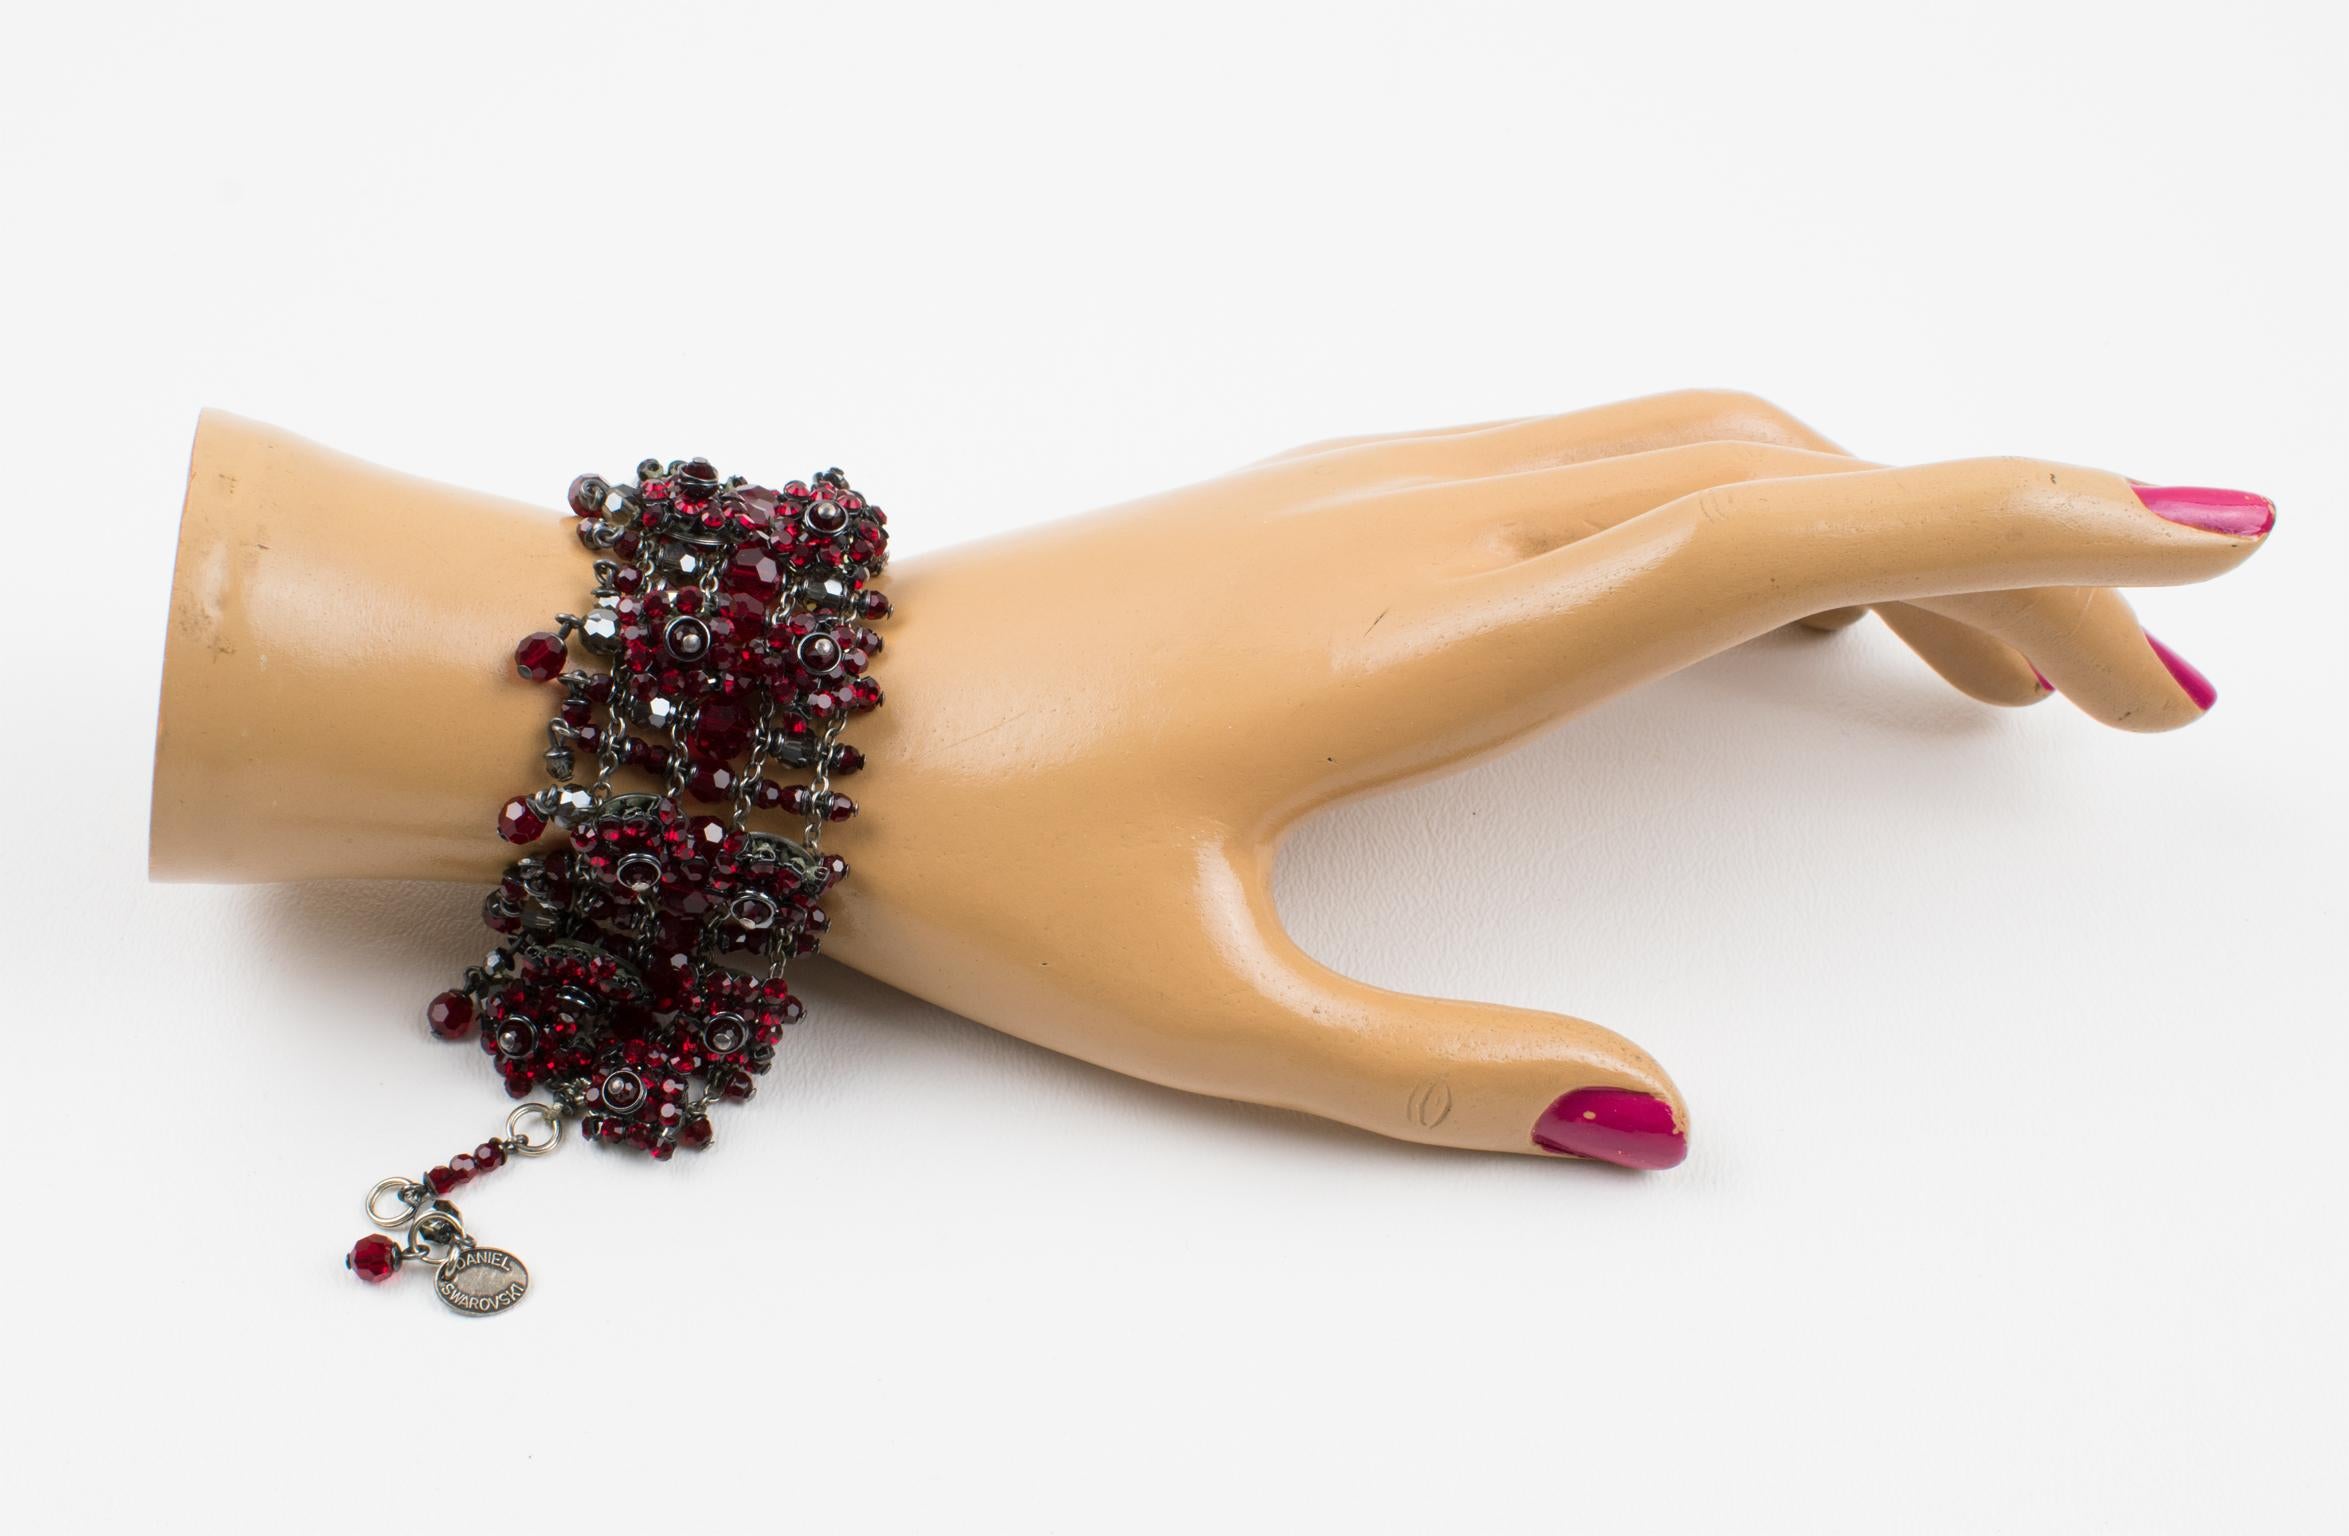 Cet élégant bracelet à maillons Daniel Swarovski Paris couture présente une forme articulée d'inspiration victorienne et des chaînes en métal argenté ornées de strass et de perles à facettes en cristal Swarovski rouge rubis et gris fumé. La pièce